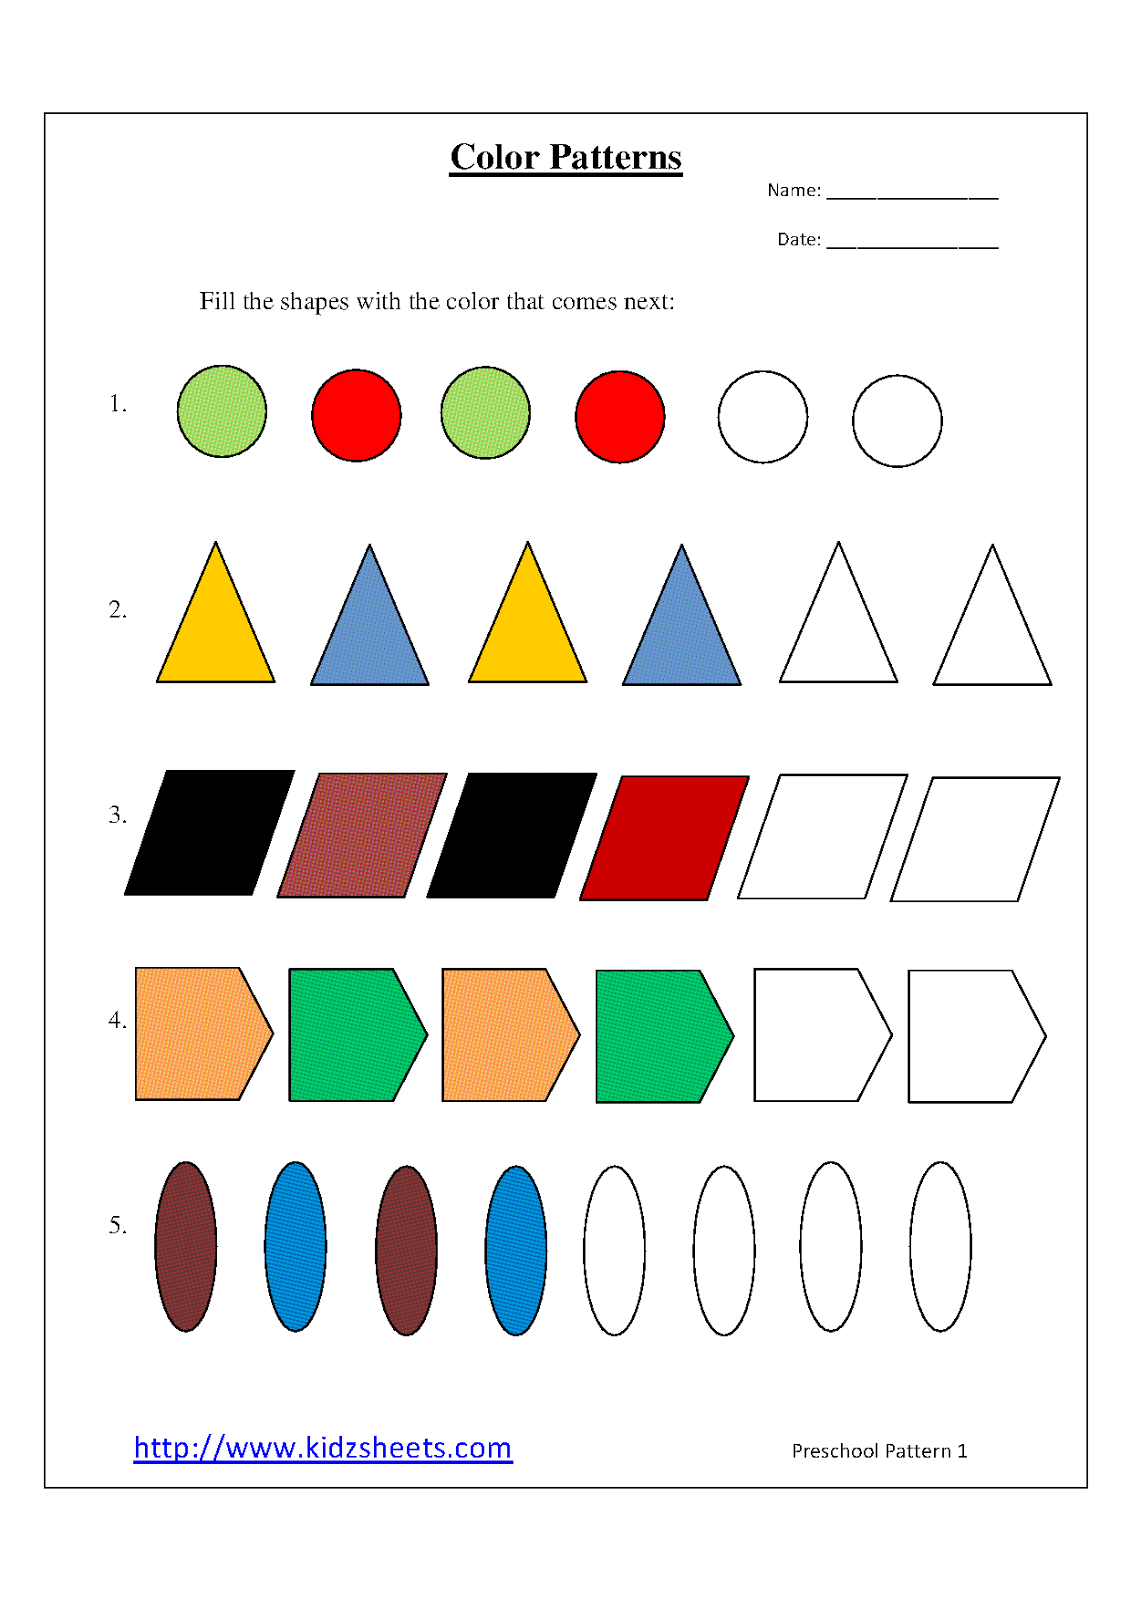 5 Best Images of Patterns Preschool Printable - Easy Preschool Pattern